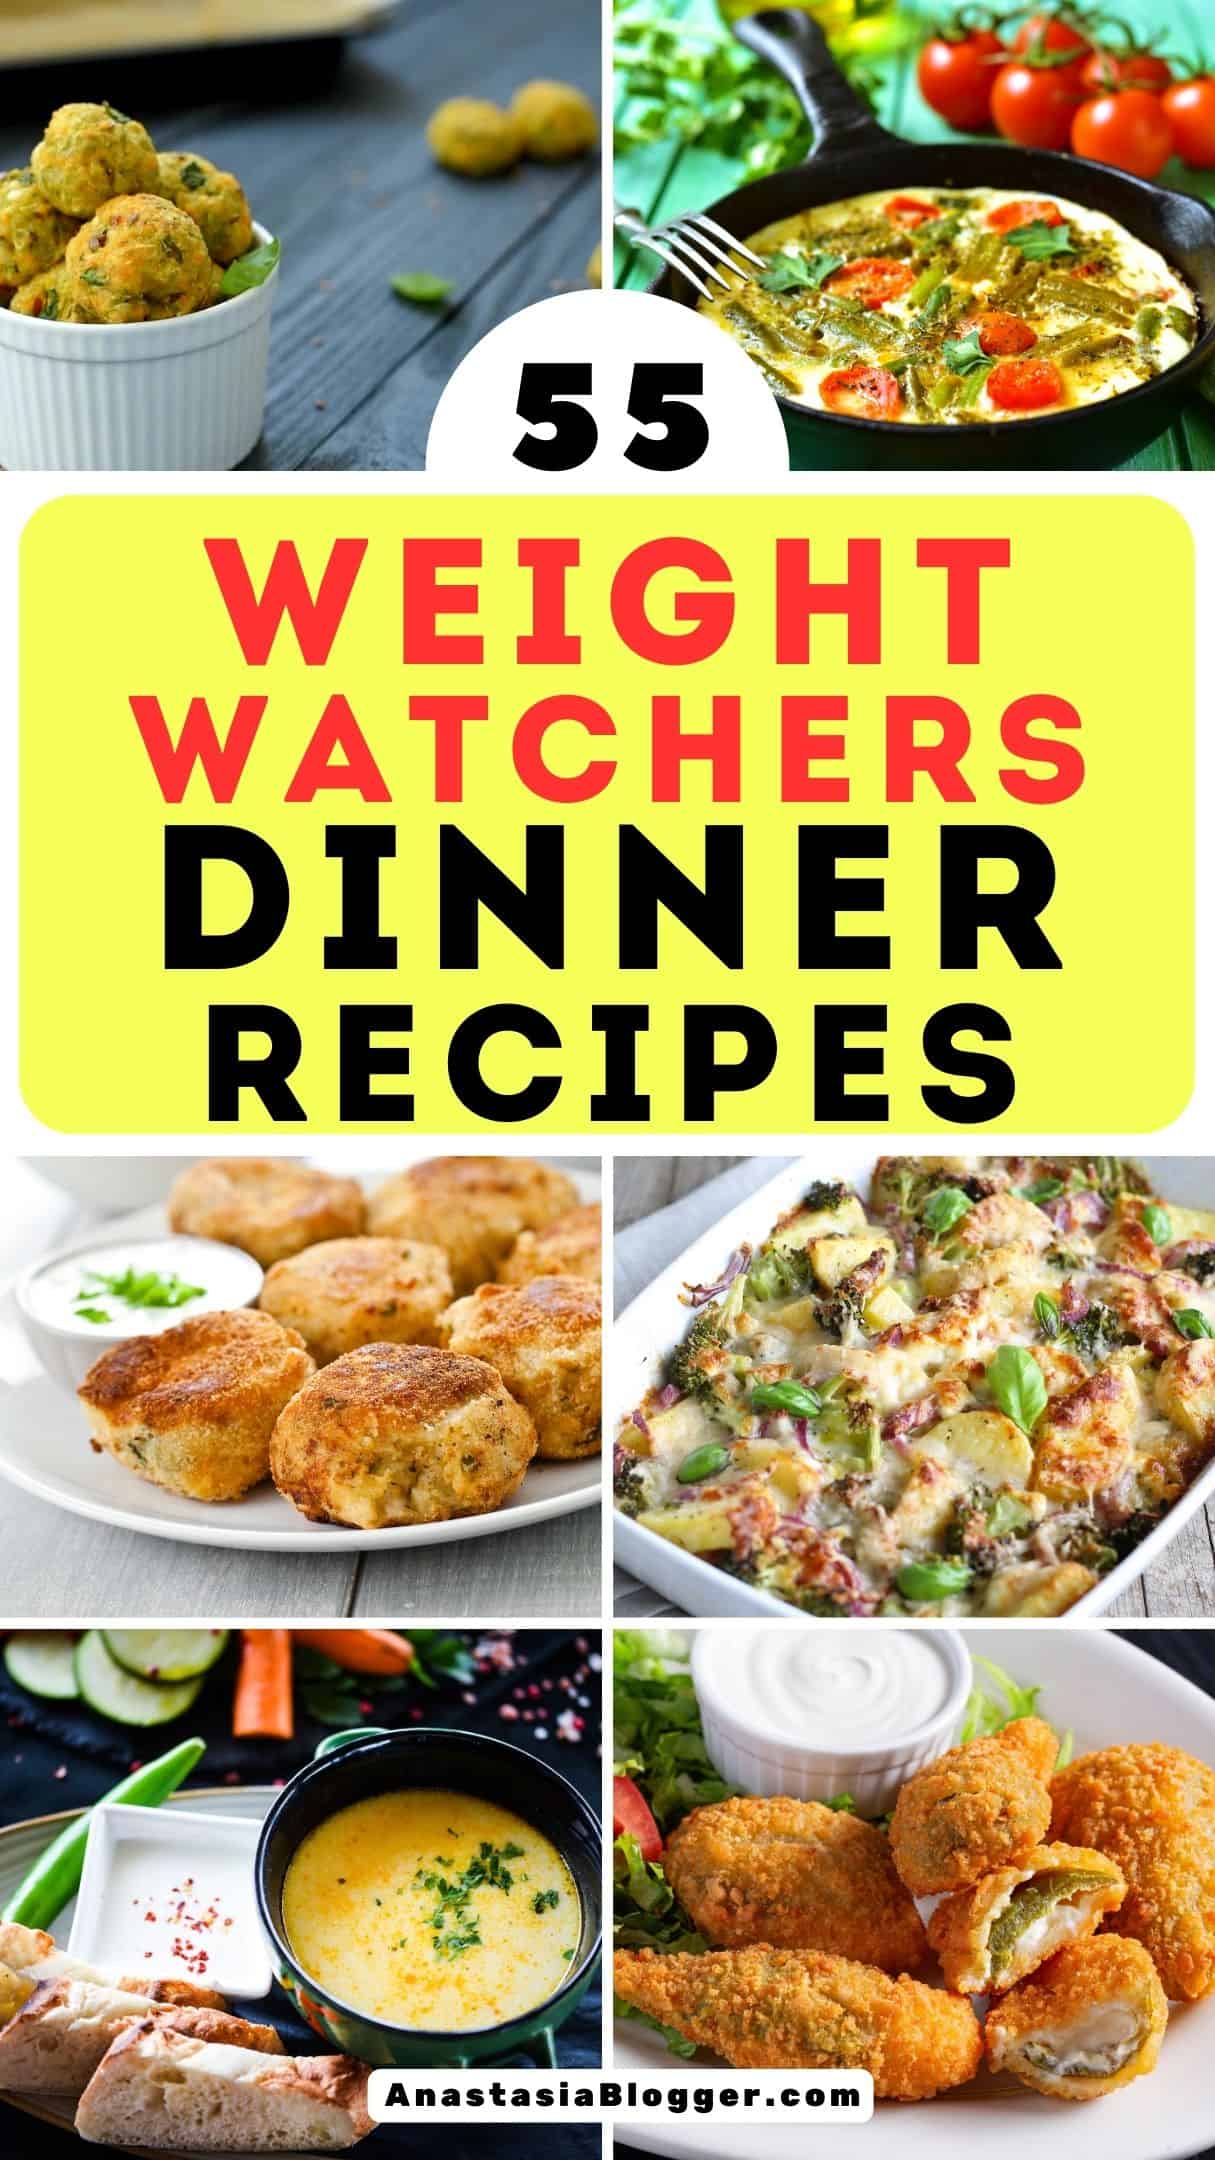 Weight Watchers Dinner Ideas